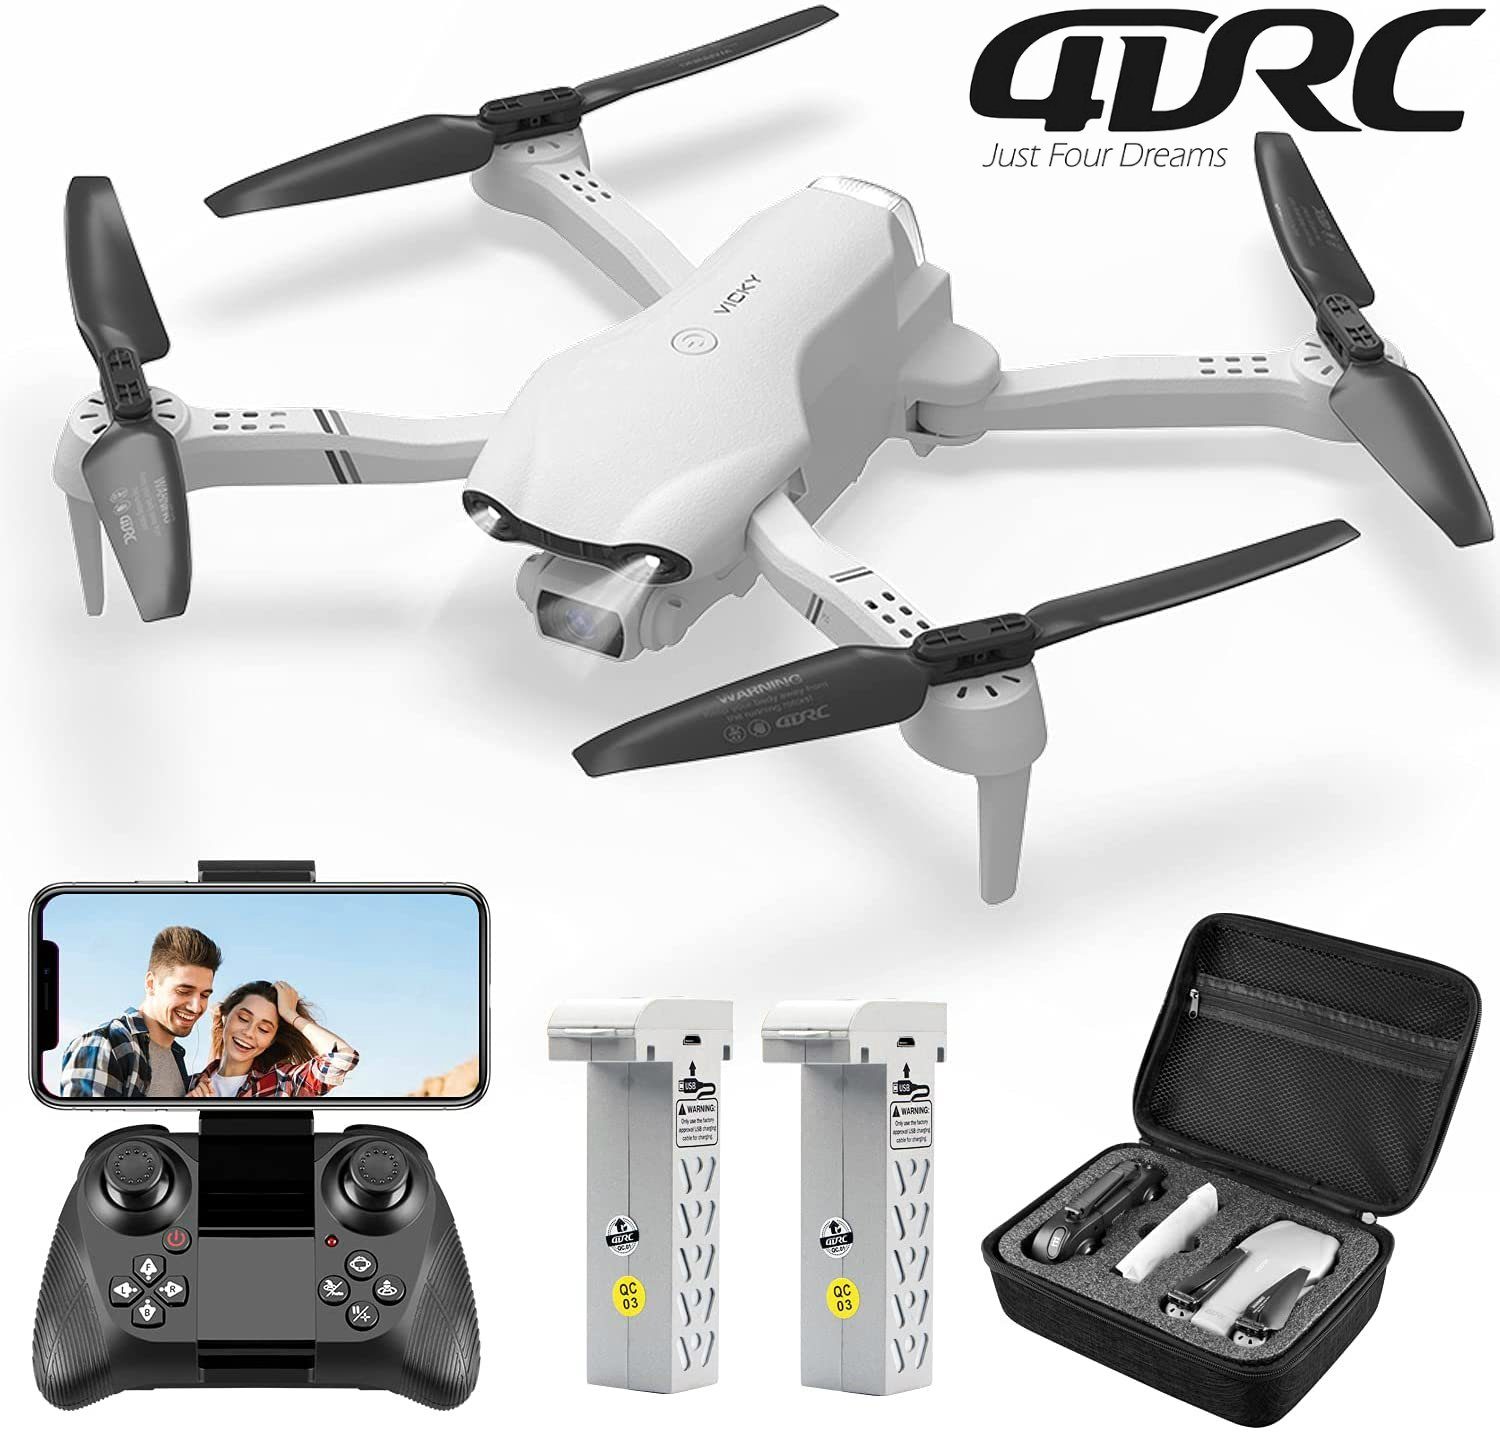 für automatischer Flugzeit, 32 4DRC F10, HD, Weiß Quadcopter Schwebeflug) FPV-Live-Video, klappbarer (1080P Minuten Kinder Anfänger, & Spielzeug-Drohne